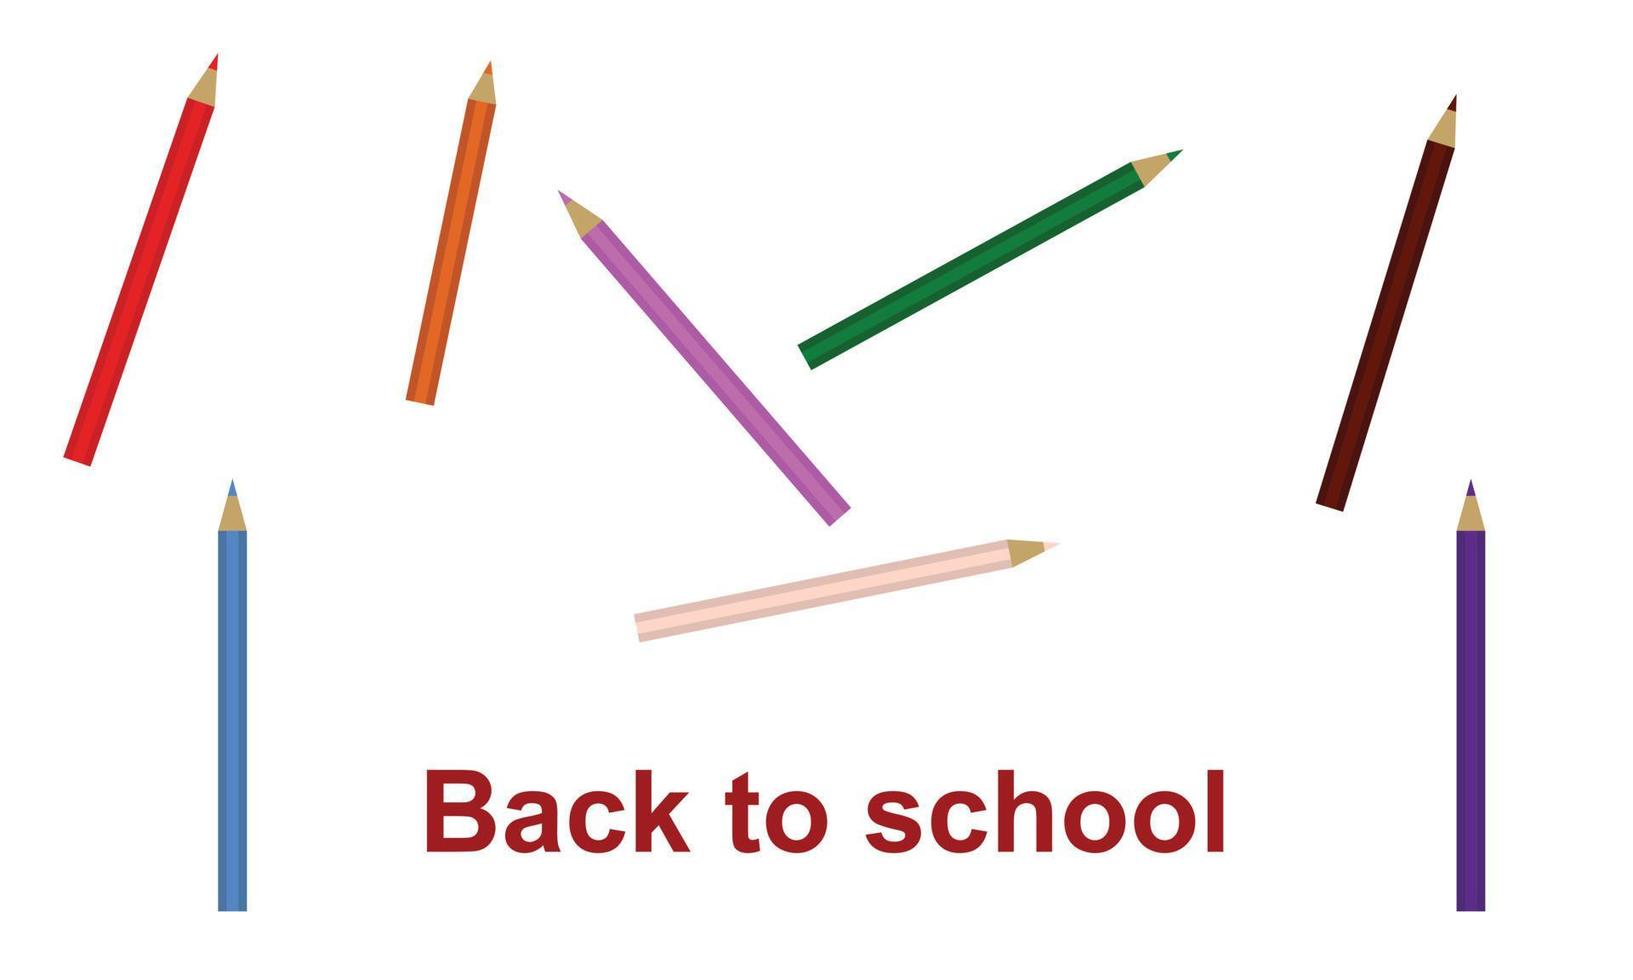 benvenuto indietro per scuola sfondo con matite, concetto di formazione scolastica bandiera con indietro per scuola lettering design vettore